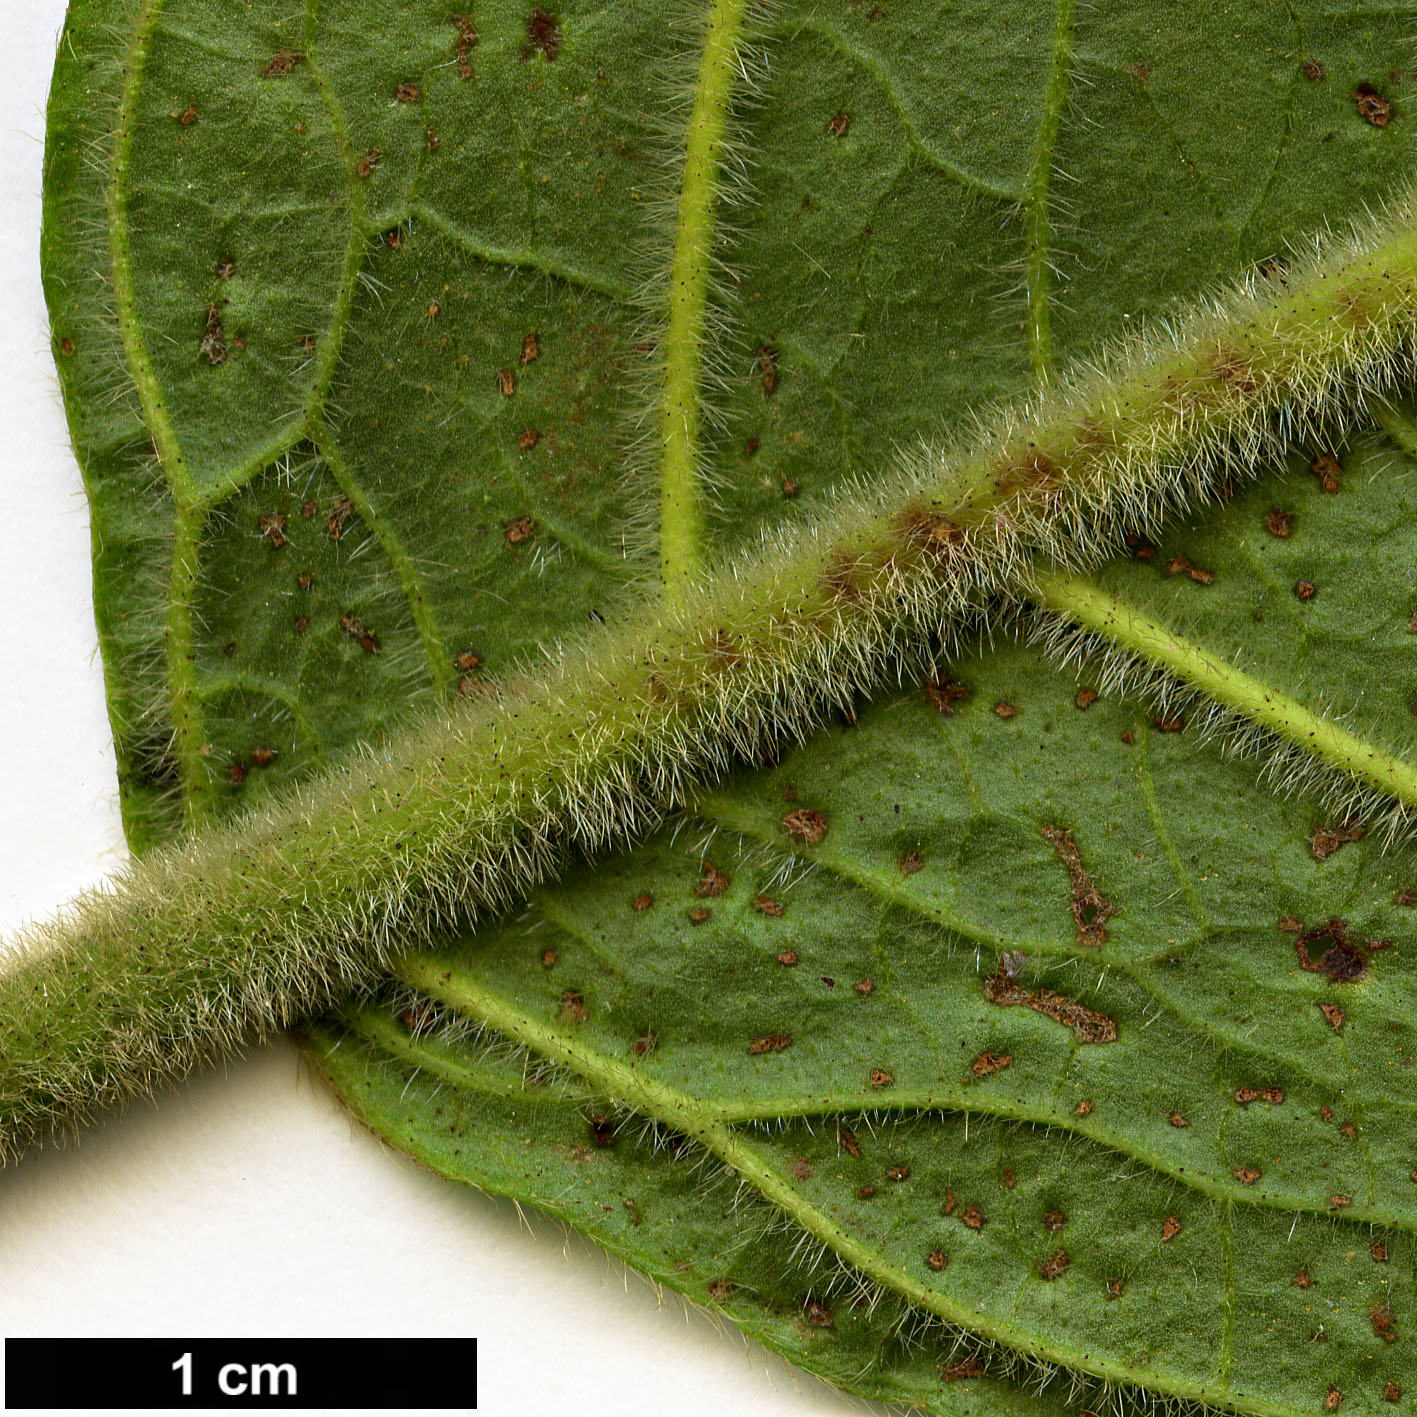 High resolution image: Family: Adoxaceae - Genus: Viburnum - Taxon: sambucinum - SpeciesSub: var. tomentosum